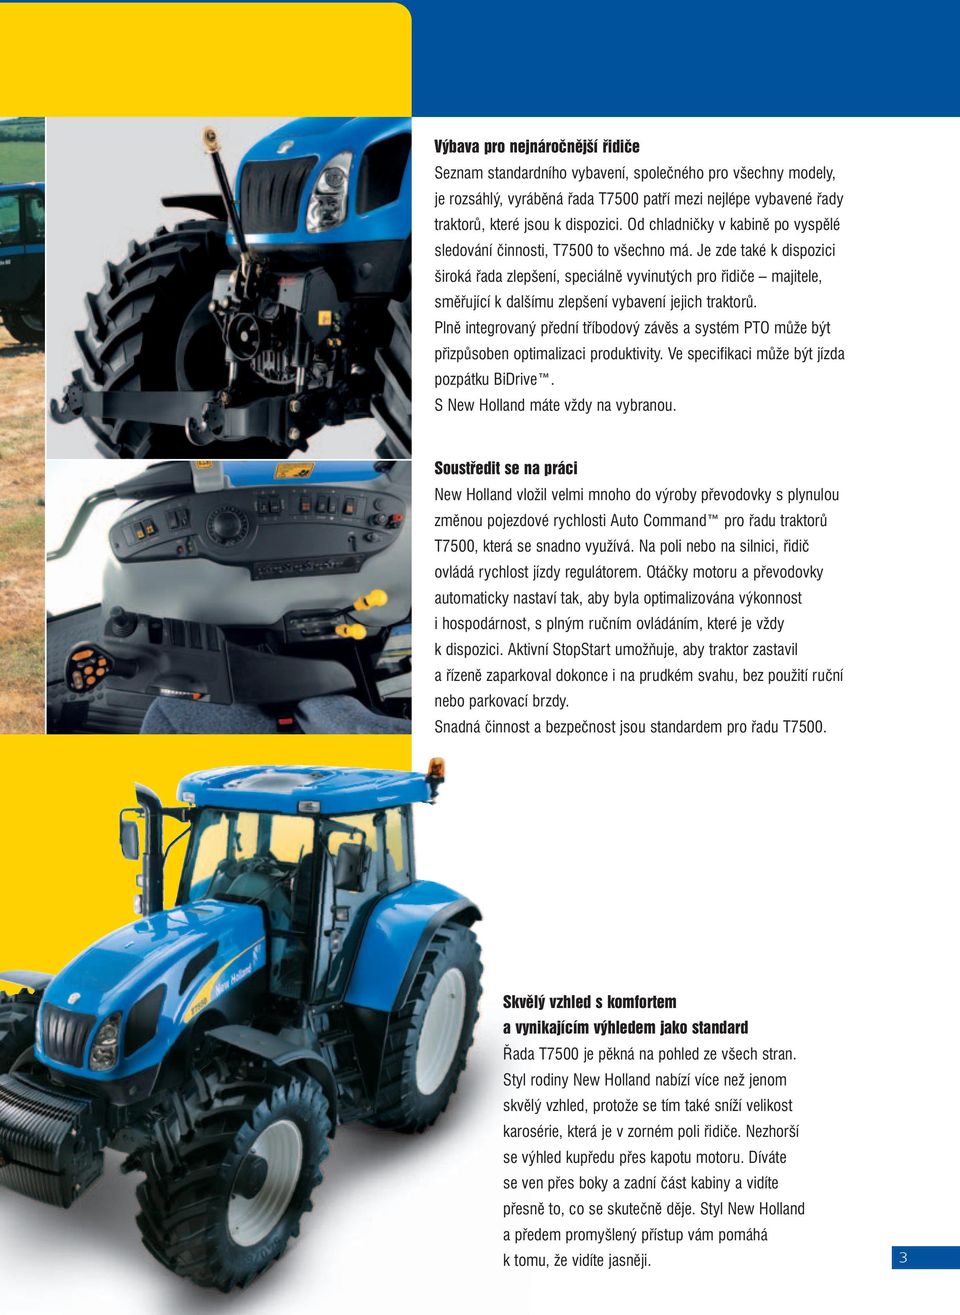 Je zde také k dispozici široká řada zlepšení, speciálně vyvinutých pro řidiče majitele, směřující k dalšímu zlepšení vybavení jejich traktorů.